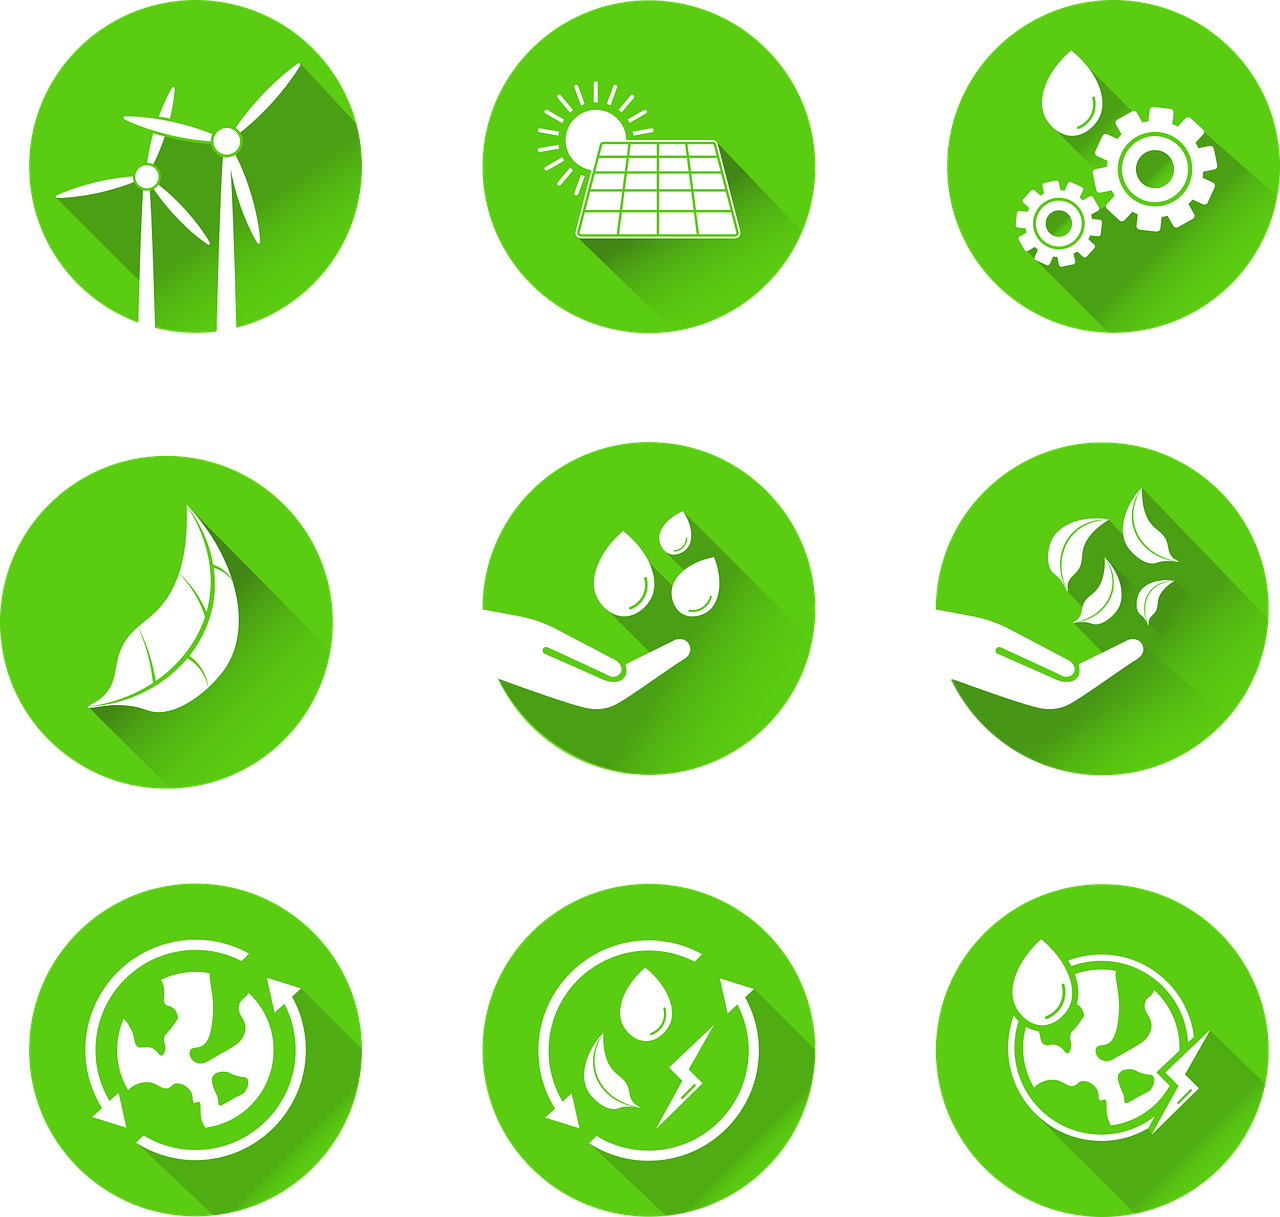 Imagen de nueve pequeños iconos relacionados con el cuidado del medio ambiente de color verde. Cada uno de los iconos están dentro de un círculo.